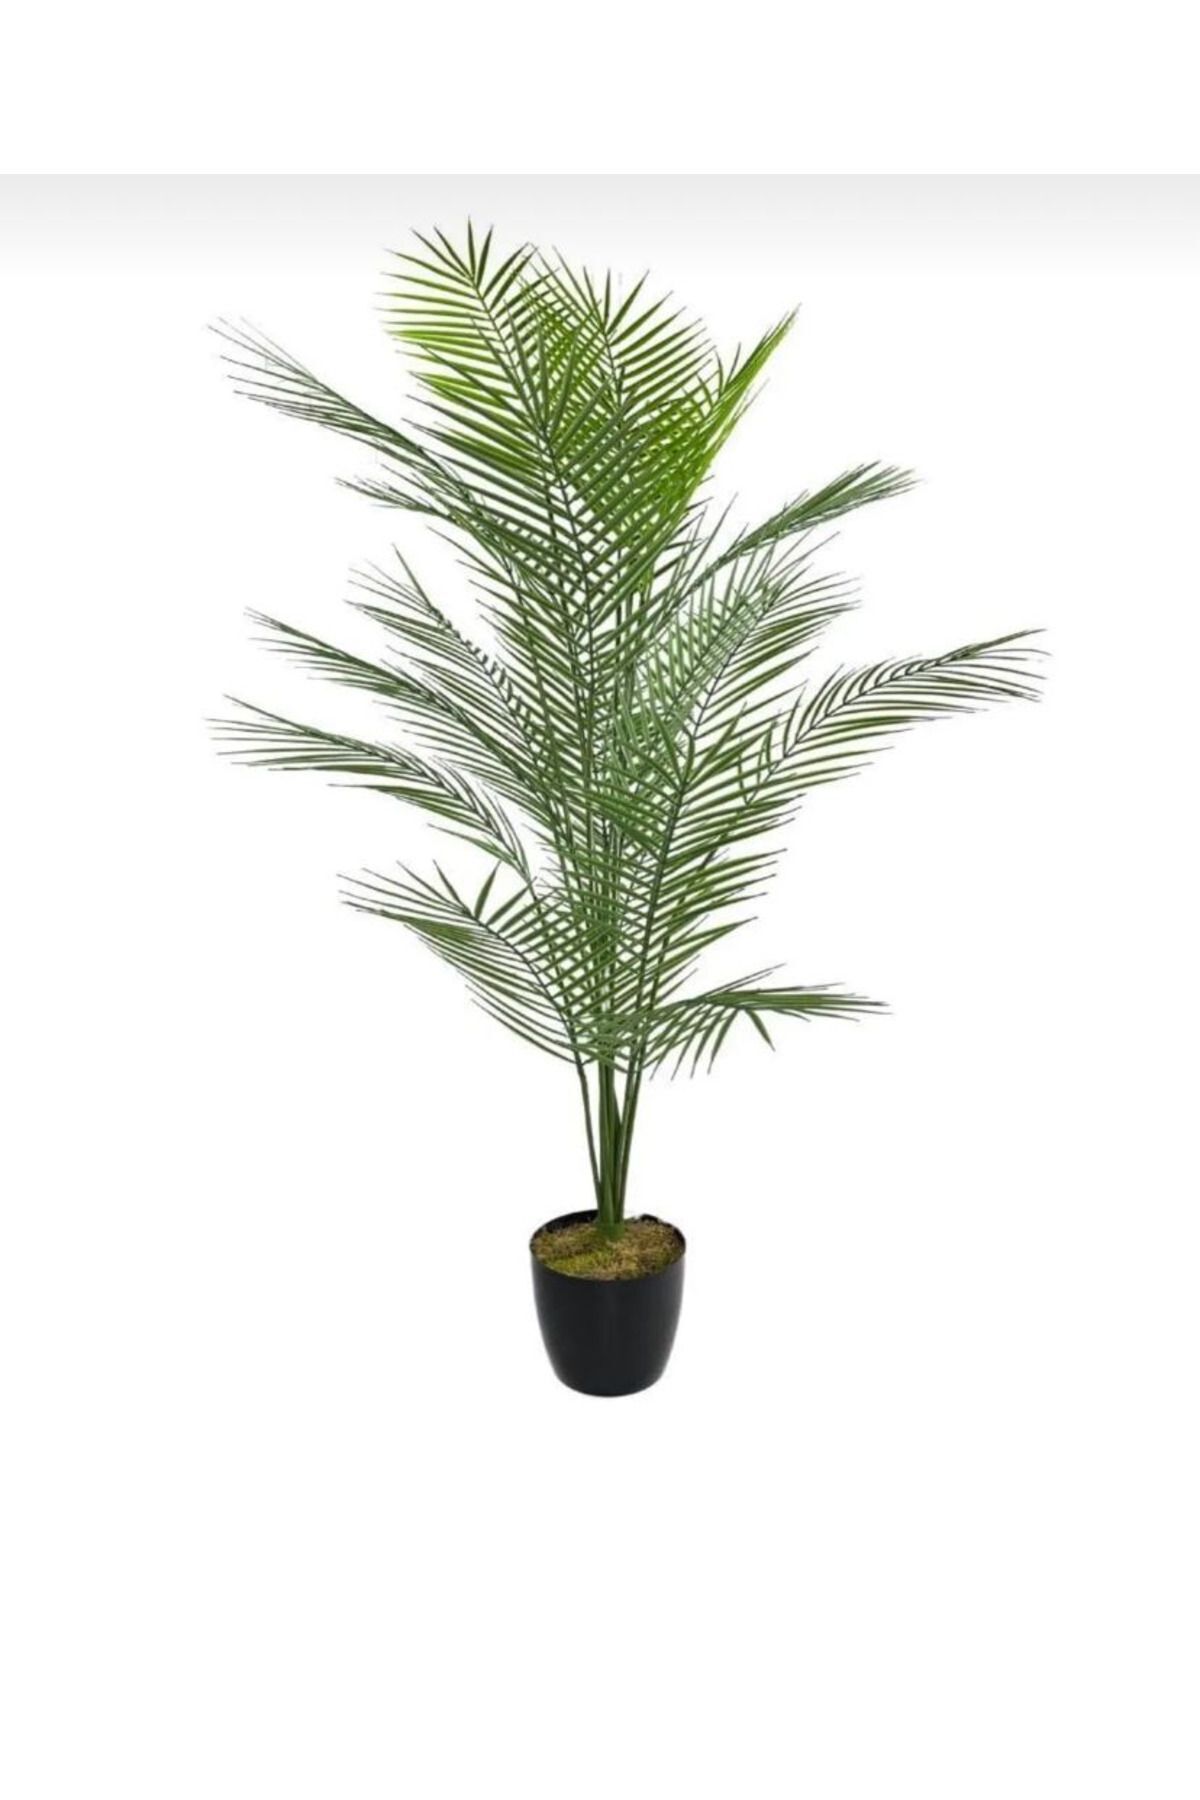 VEAL STORE 130 Cm 12 Dallı 20 Yapraklı Yapay Ağaç Areka Ağacı Palmiye Ağacı 130cm 20 Yapraklı